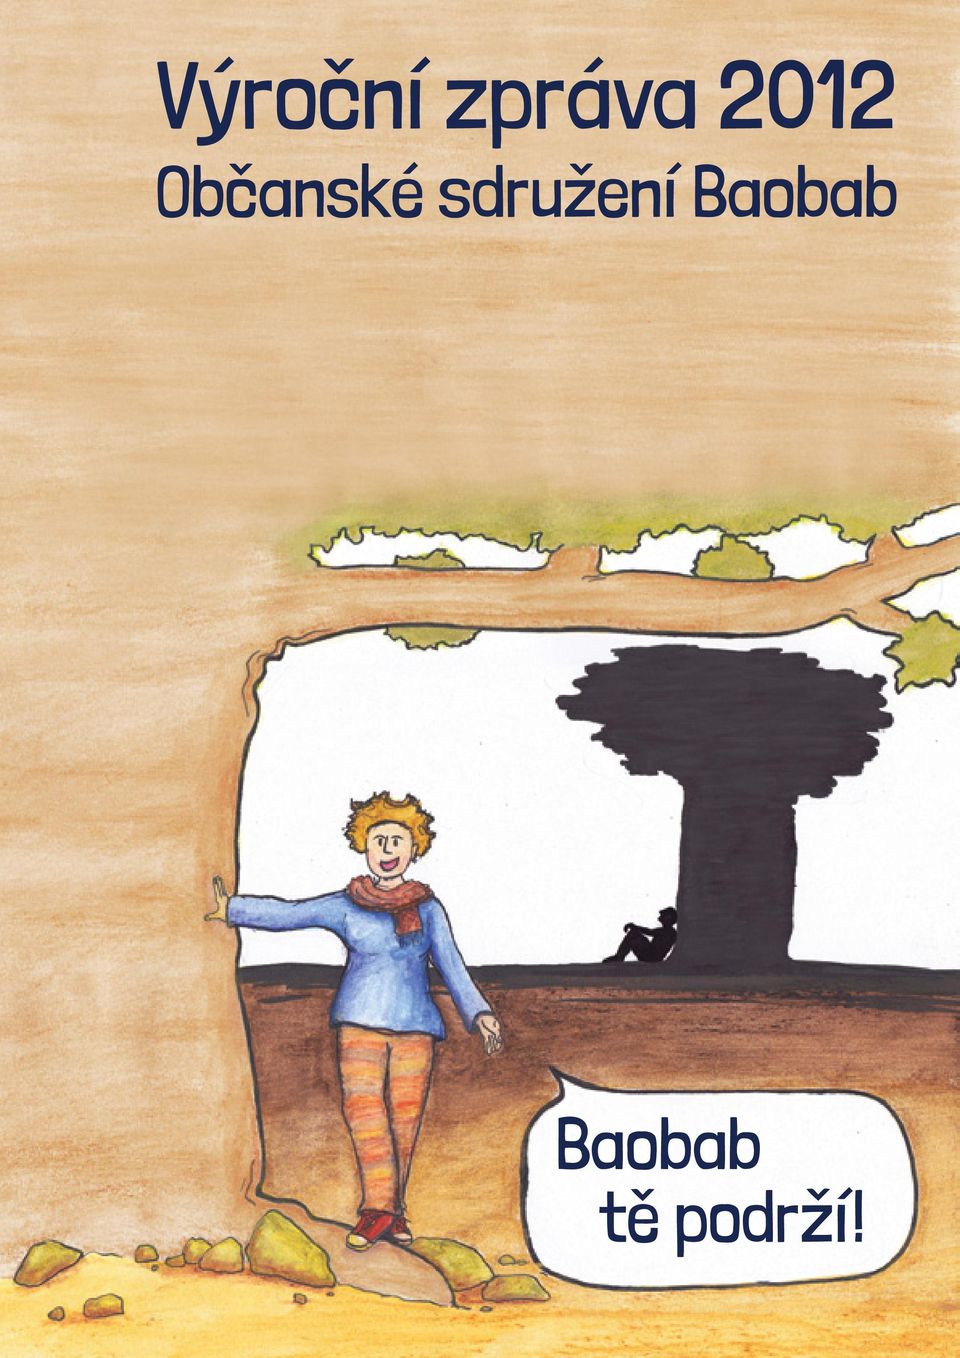 sdružení Baobab